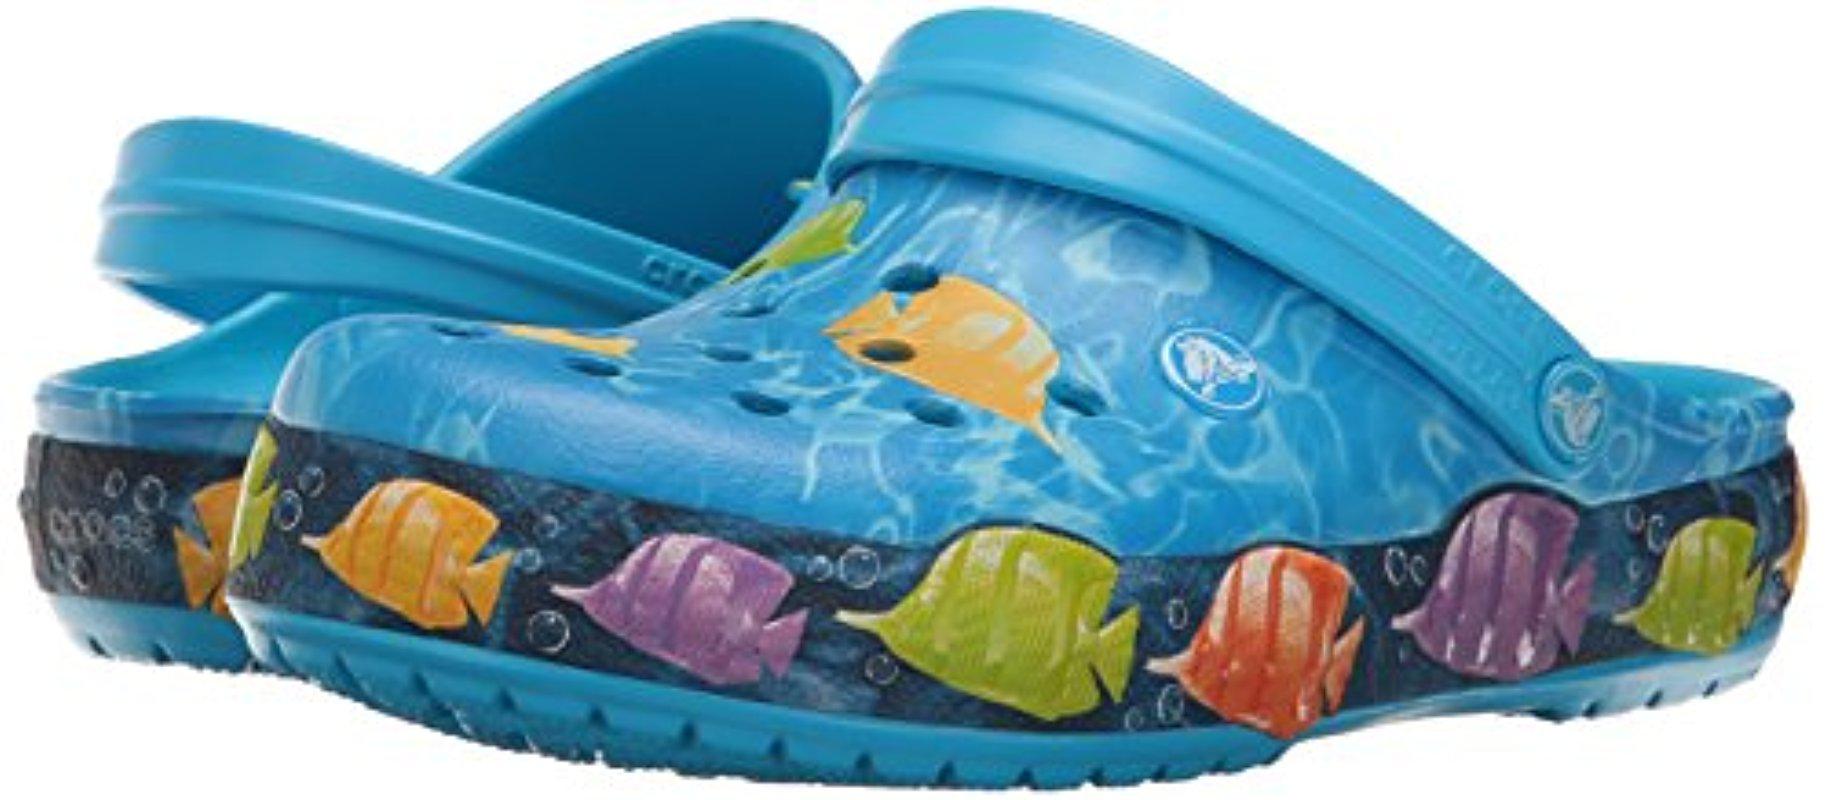 crocs fishing shoes